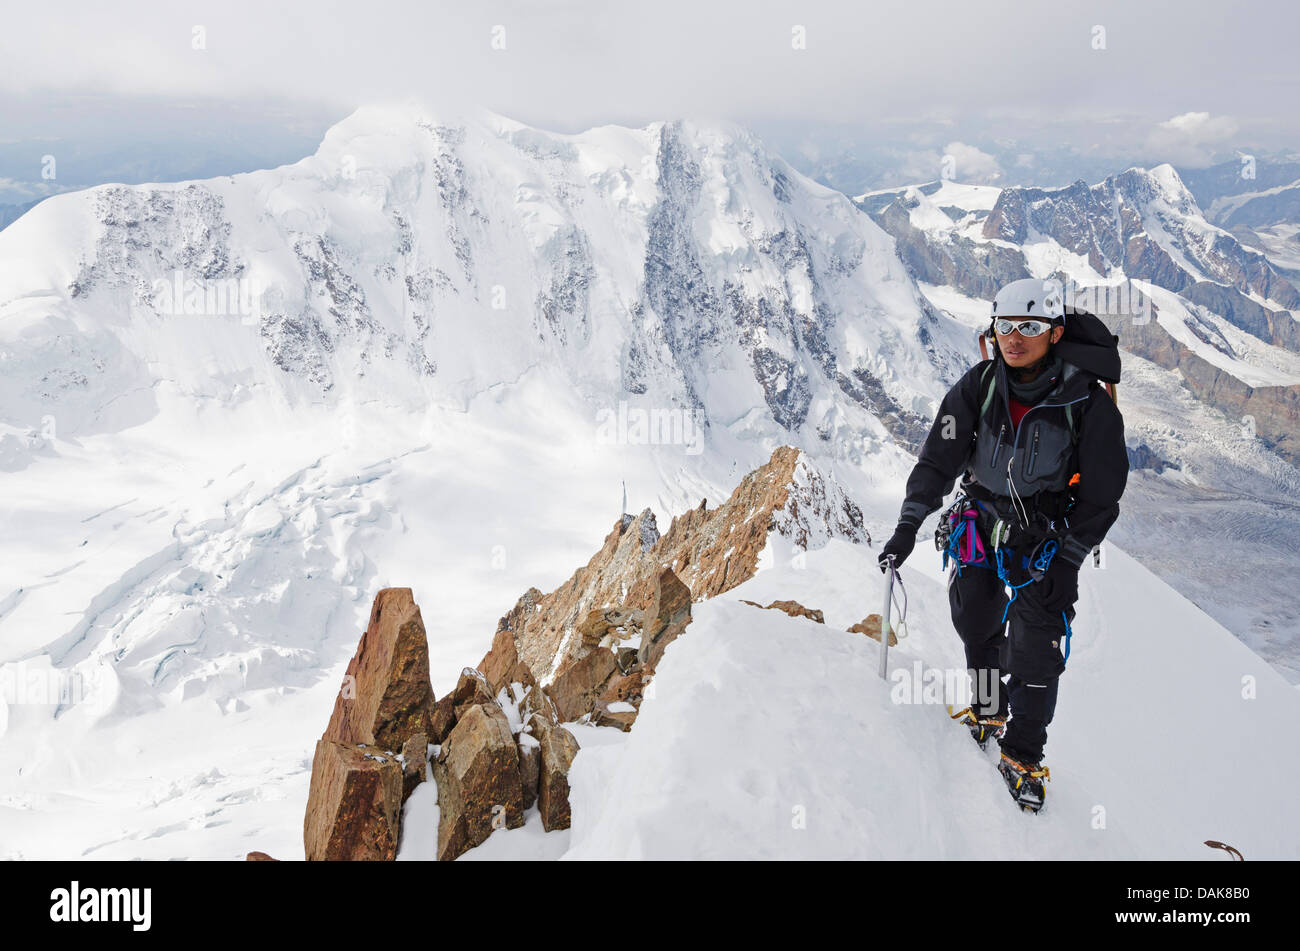 Le grimpeur Monte Rosa Duforspitze (4634m), plus haut sommet de Suisse, Zermatt, Valais, Alpes suisses, la Suisse, l'Europe (M.) Banque D'Images